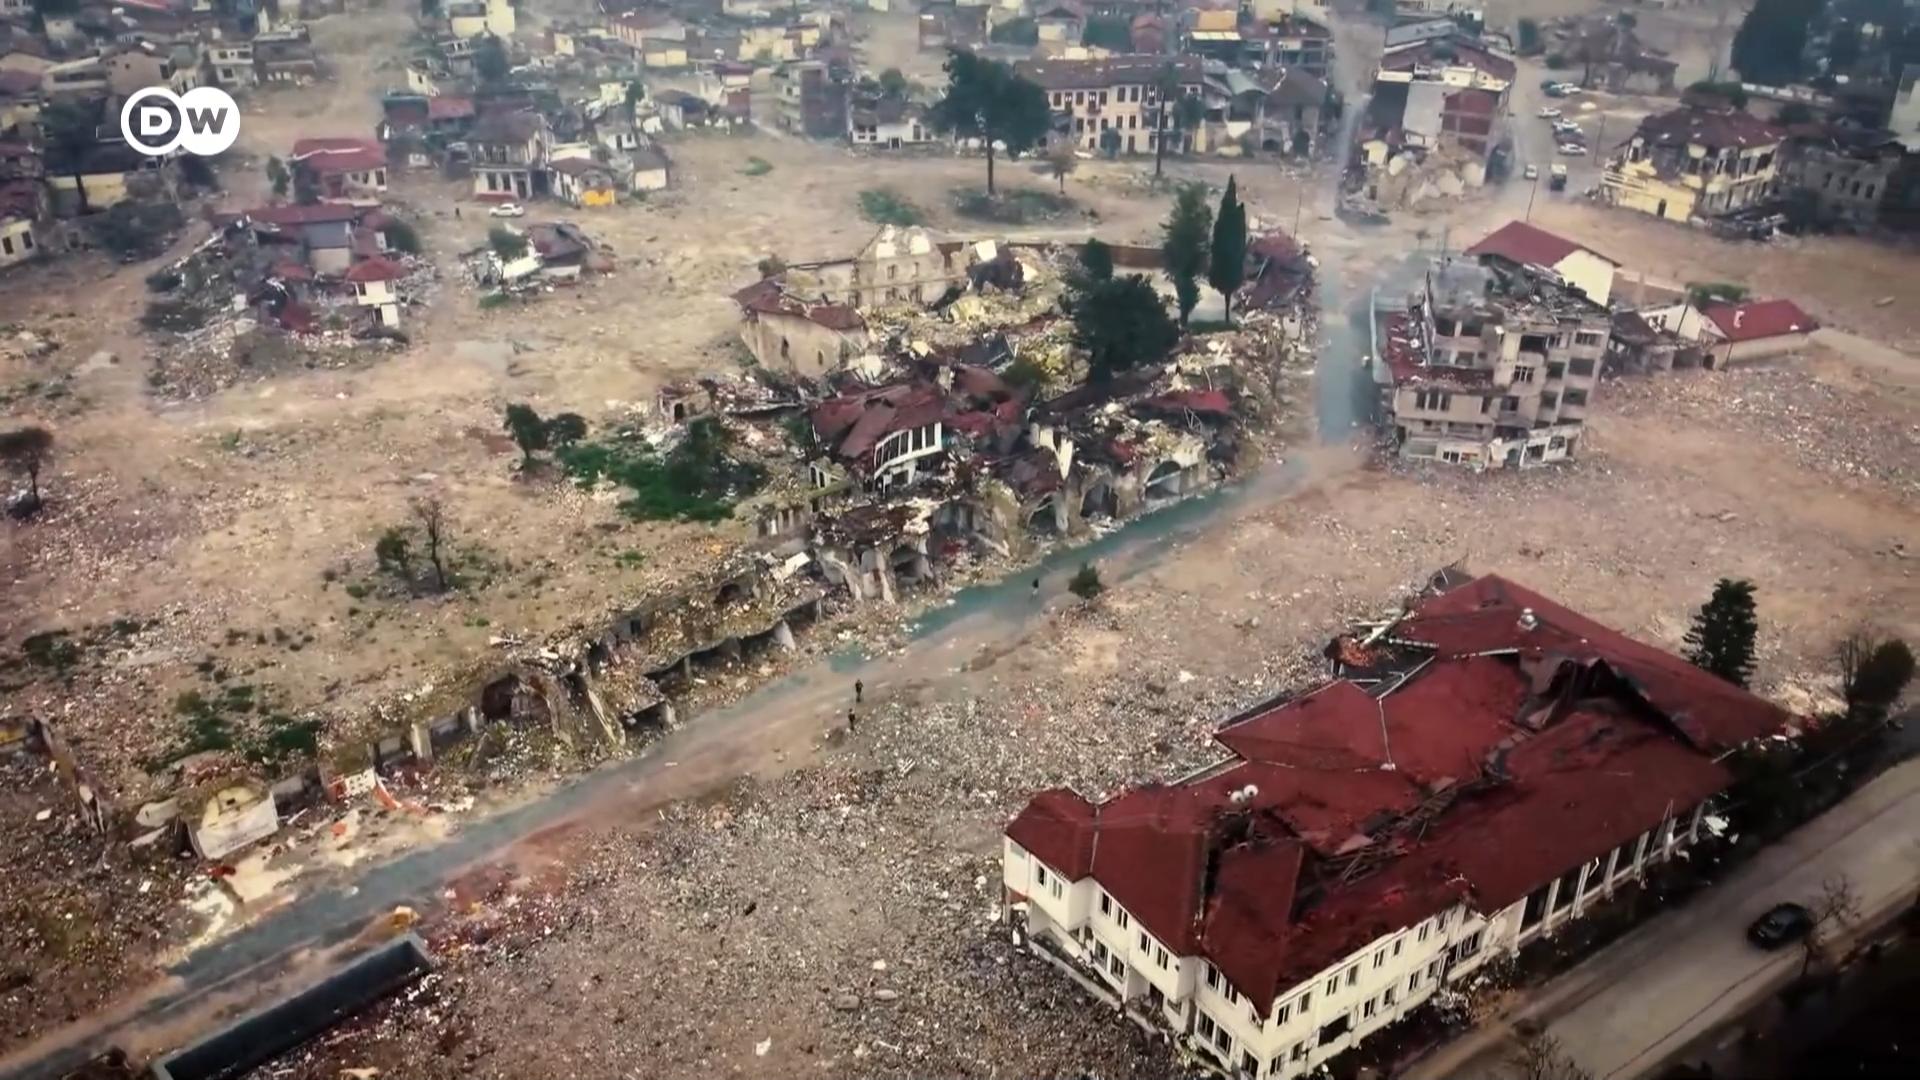 土耳其大地震已满一周年，灾区的重建进度比官方承诺的缓慢。DW通讯员带我们重返受地震重创的安塔基亚市，看看当地发生了哪些变化，受灾小区如何应对地震后天翻地覆的生活。